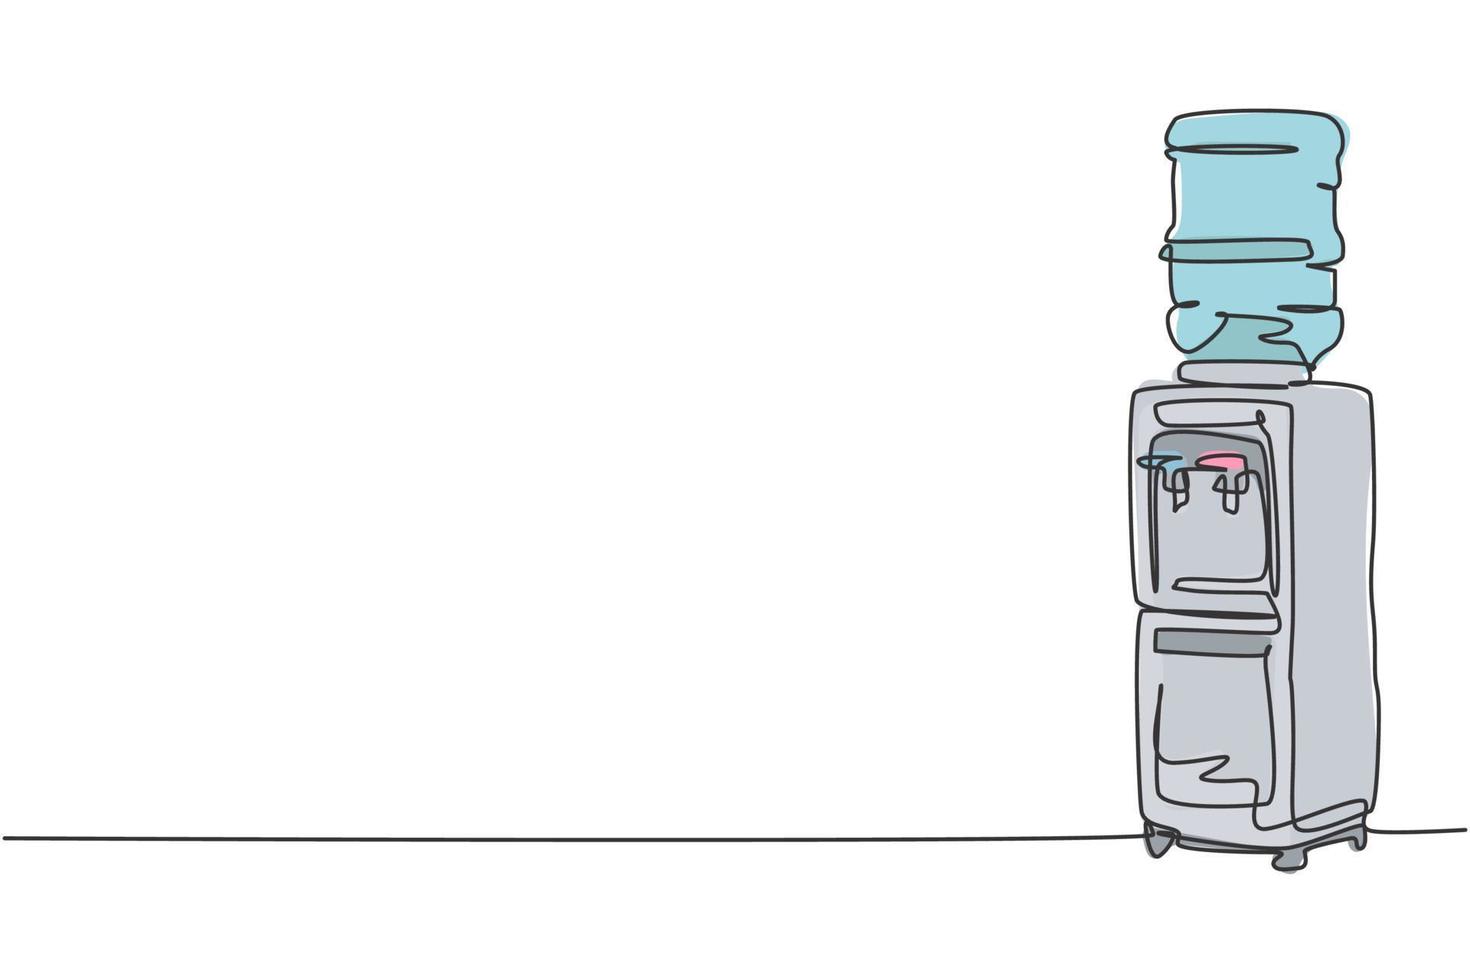 um desenho de linha contínua de dispensador de água elétrico com eletrodoméstico de galão de plástico. conceito de modelo de ferramentas domésticas de eletricidade. ilustração do gráfico vetorial moderna de desenho de linha única vetor